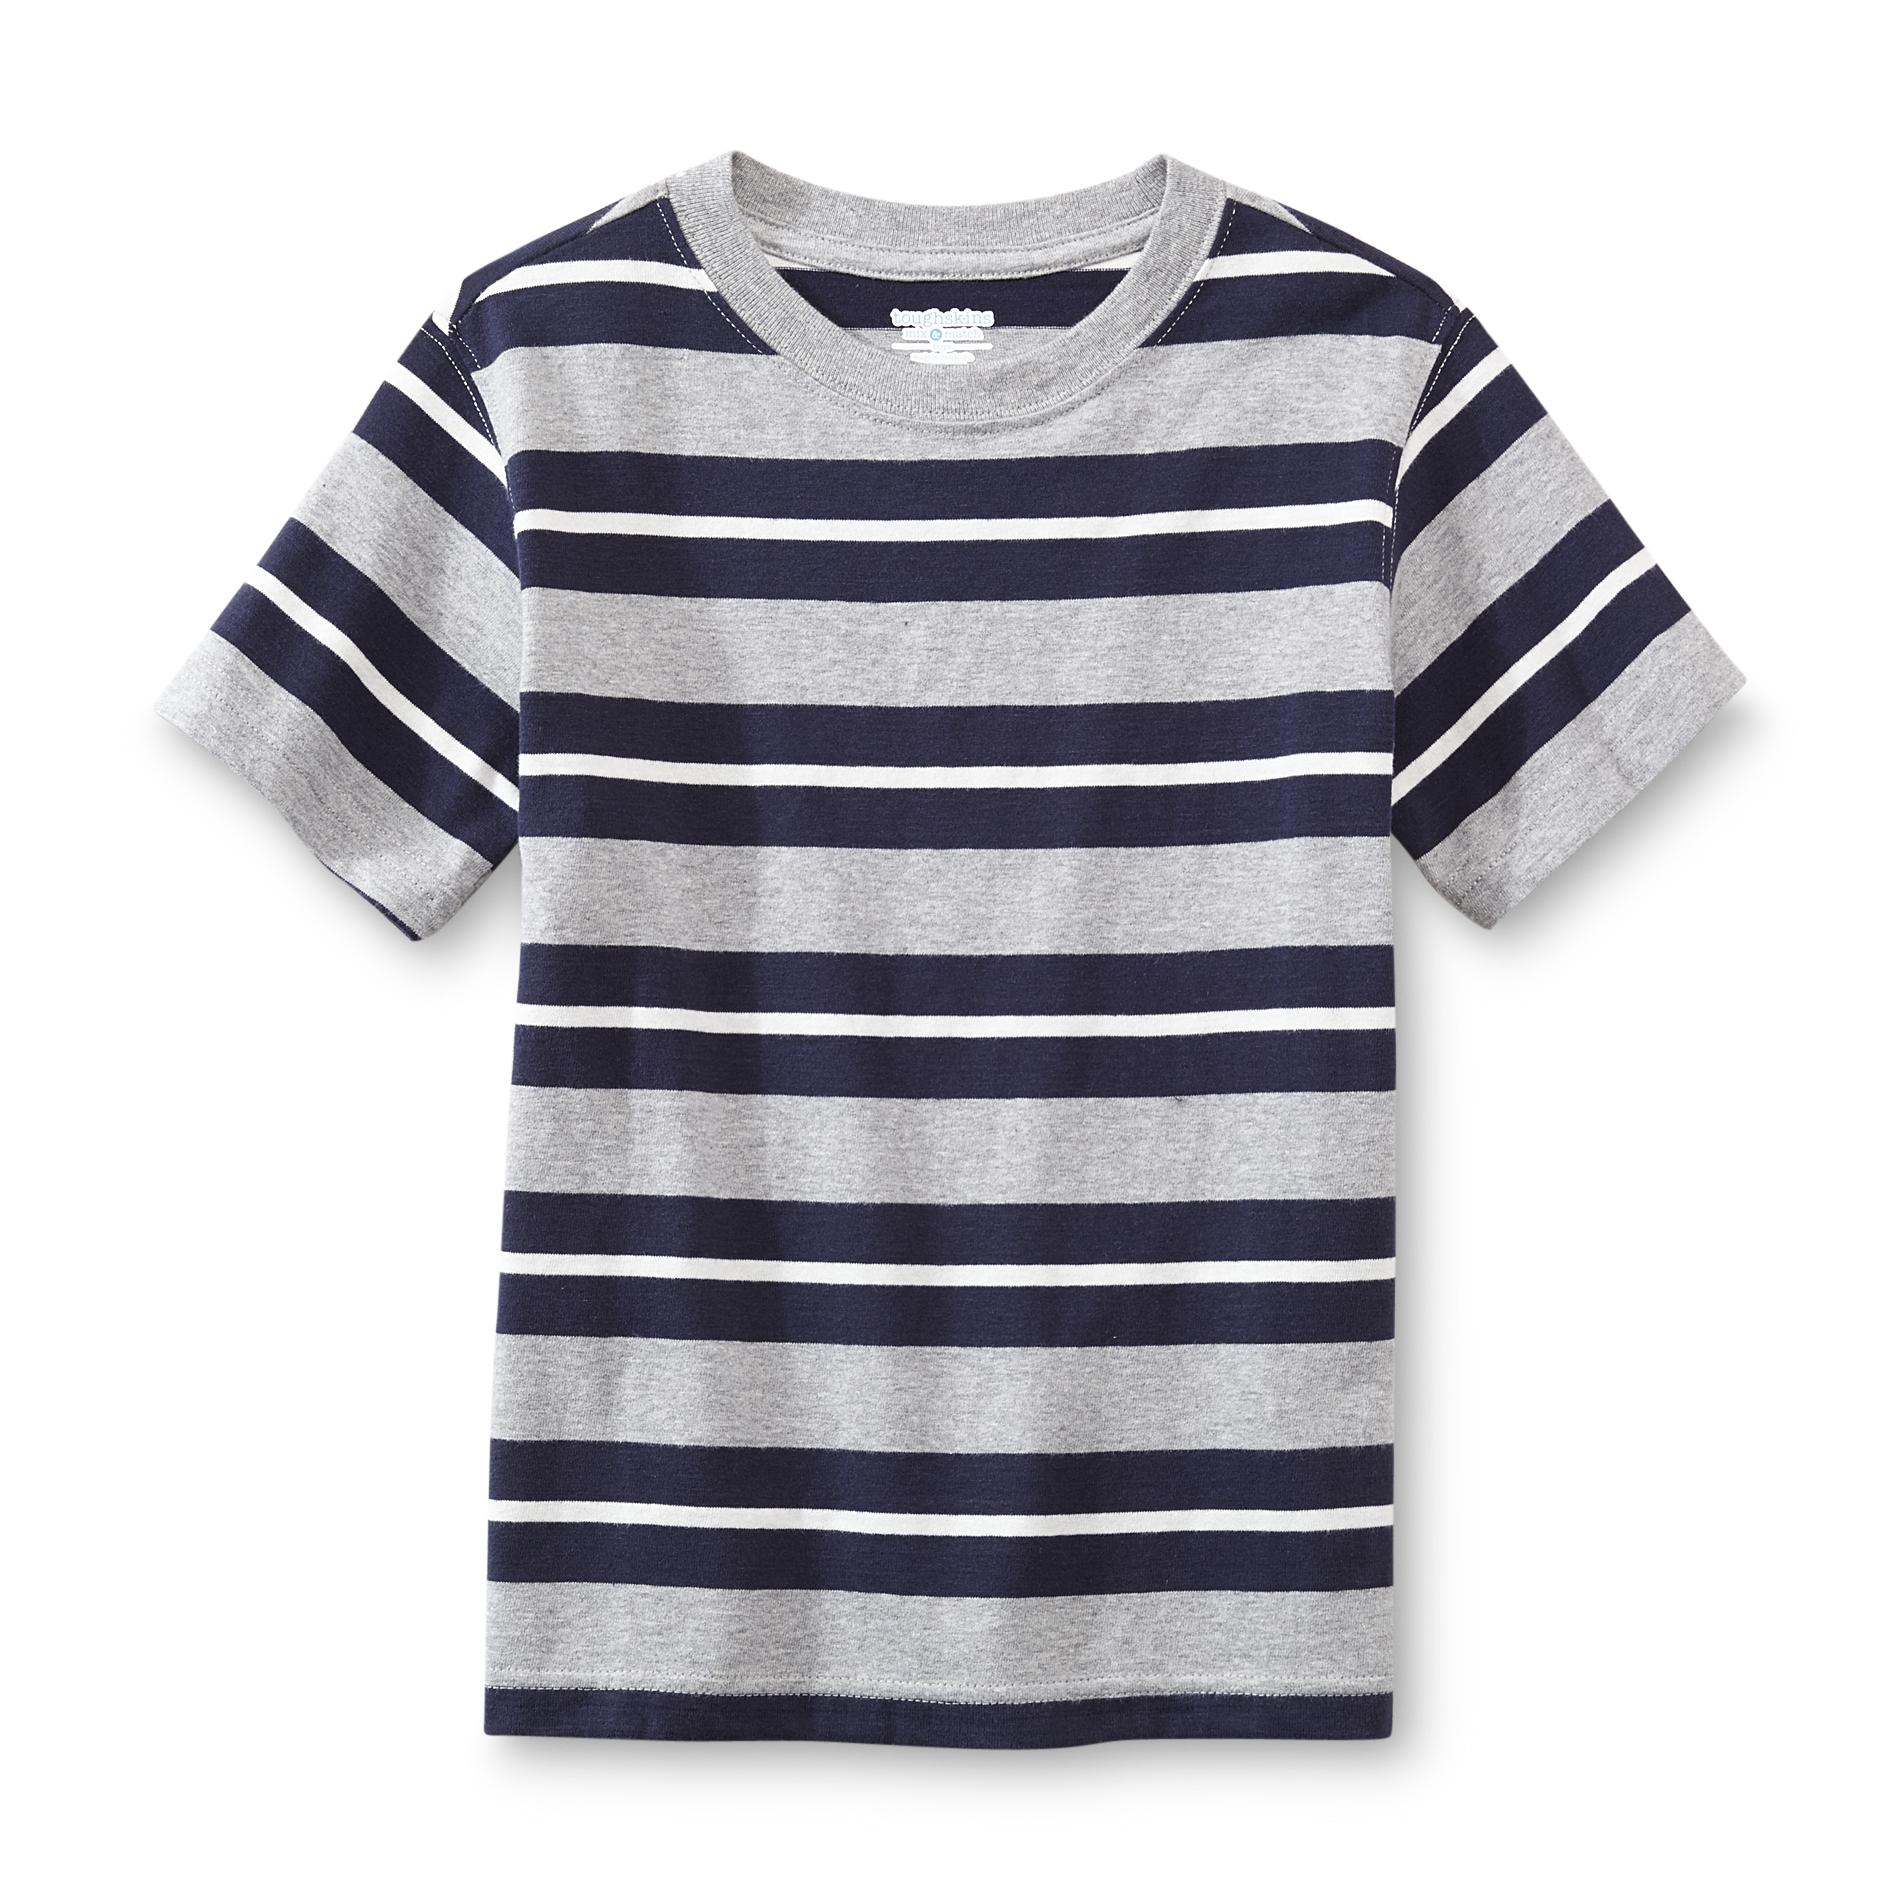 Toughskins Boy's T-Shirt - Striped